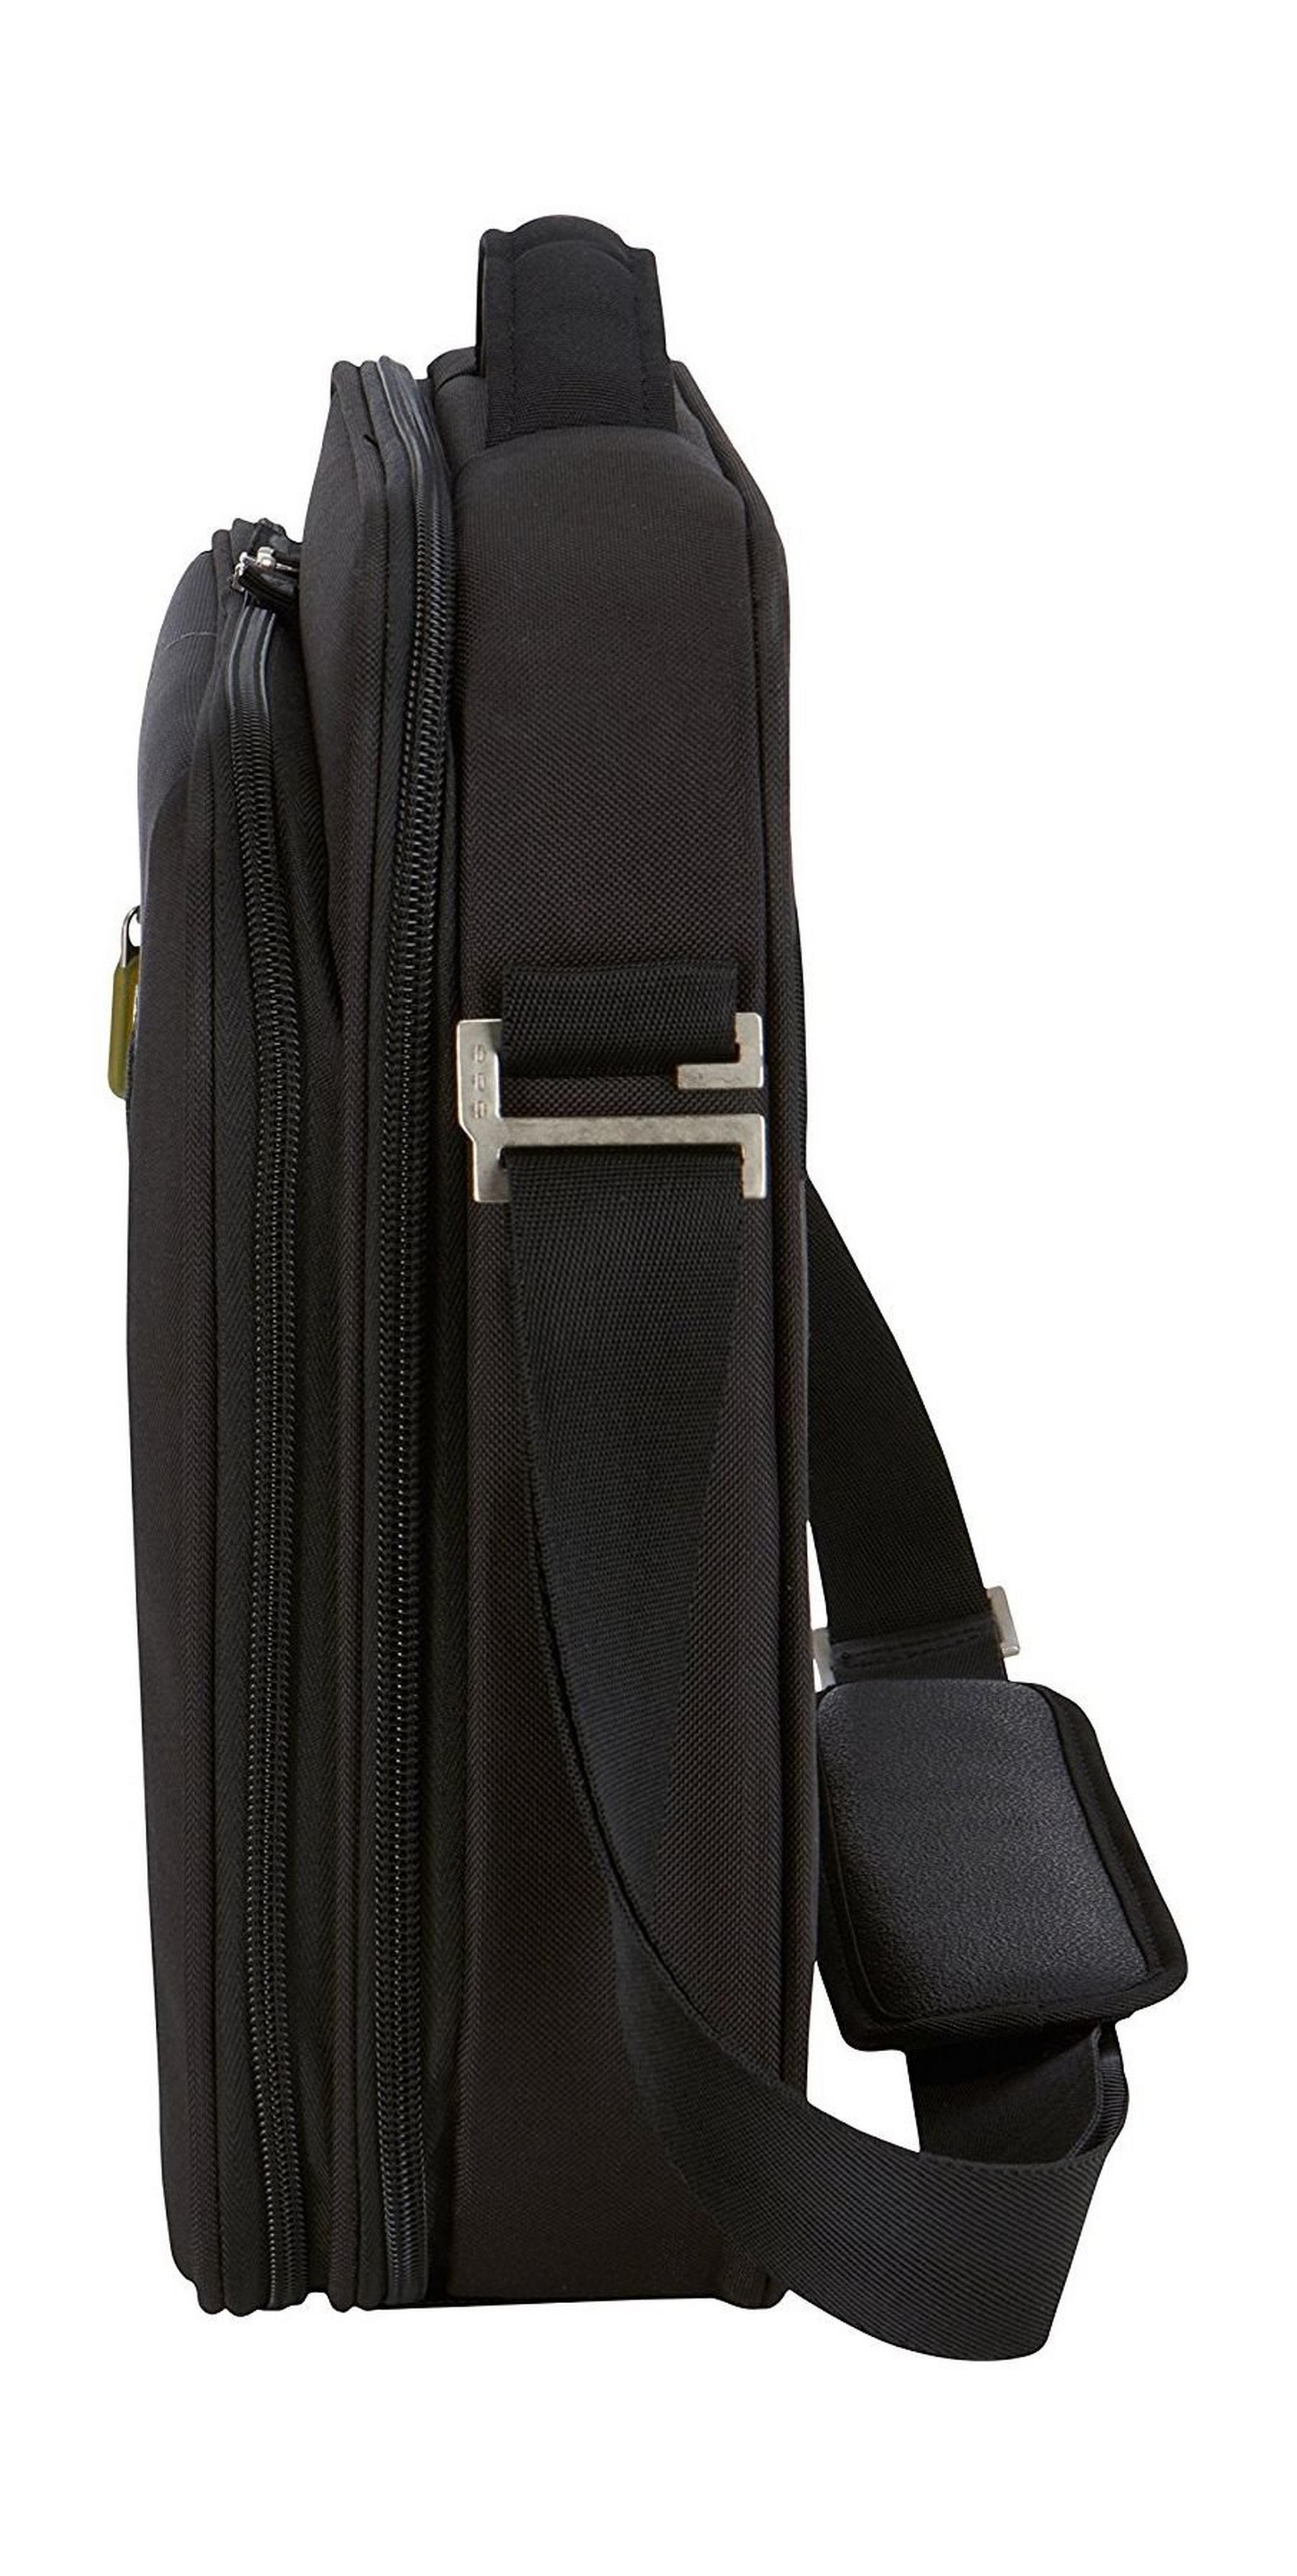 حقيبة للكمبيوتر المحمول من كيس لوجك لشاشة بحجم ١٦بوصة - اللون الأسود